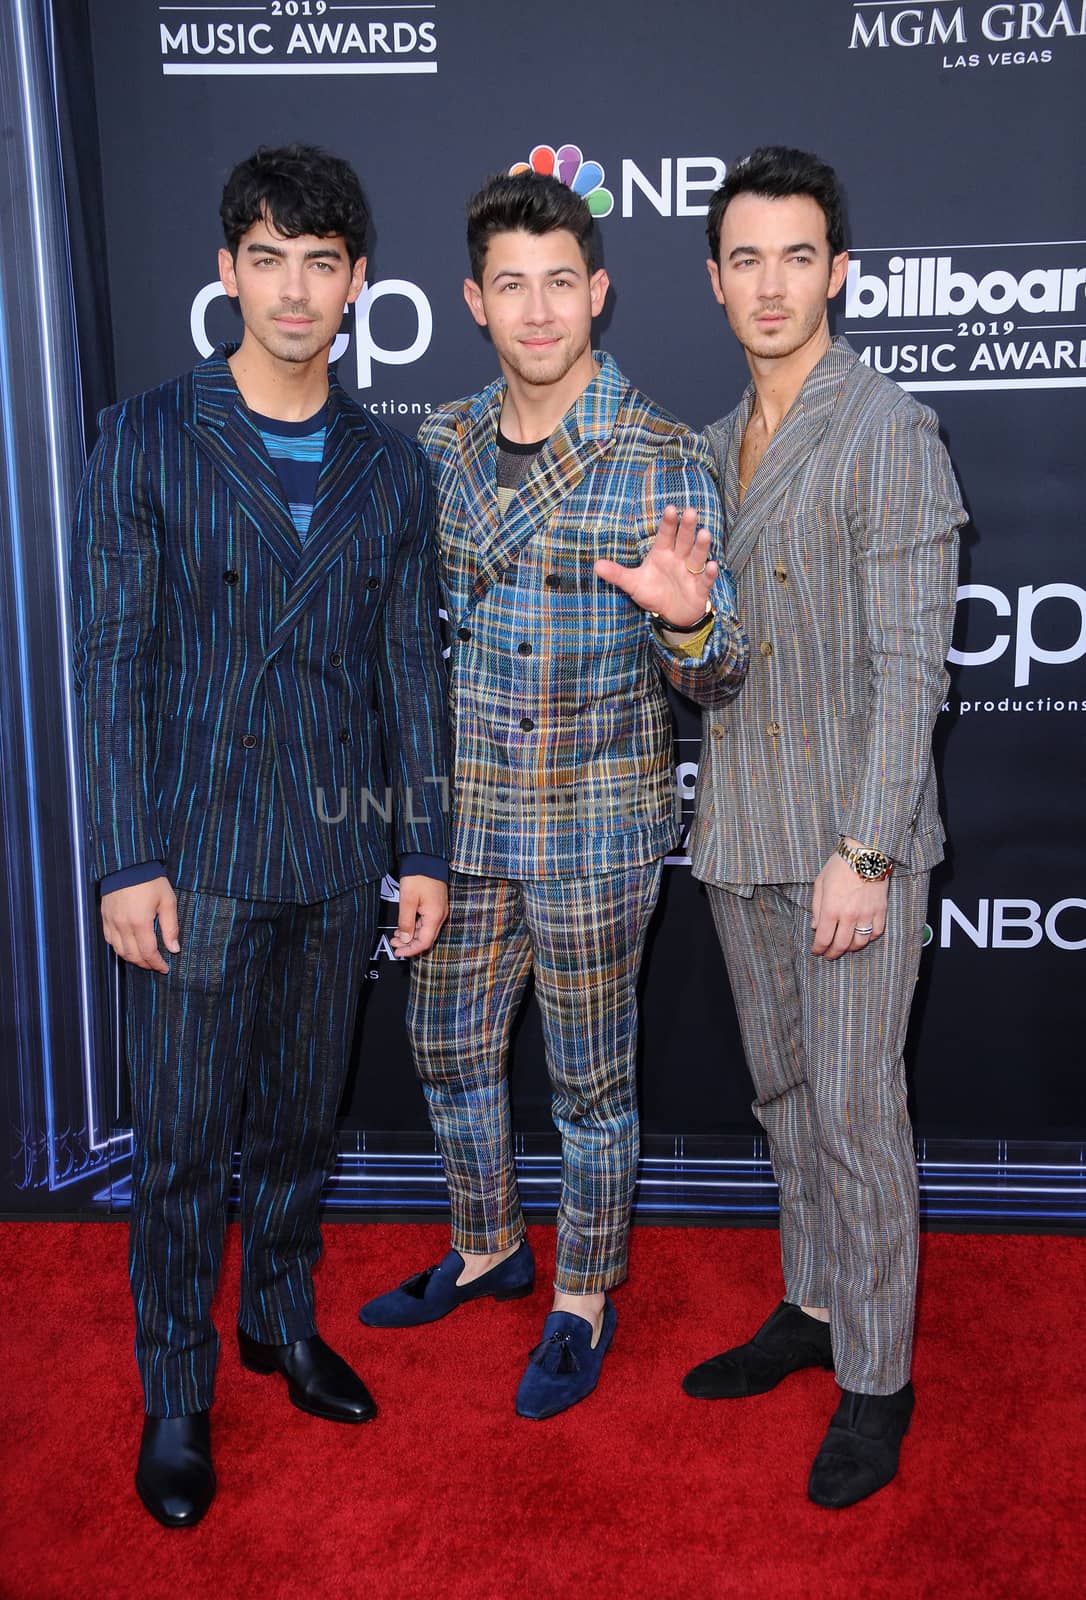 Joe Jonas, Nick Jonas and Kevin Jonas by Lumeimages